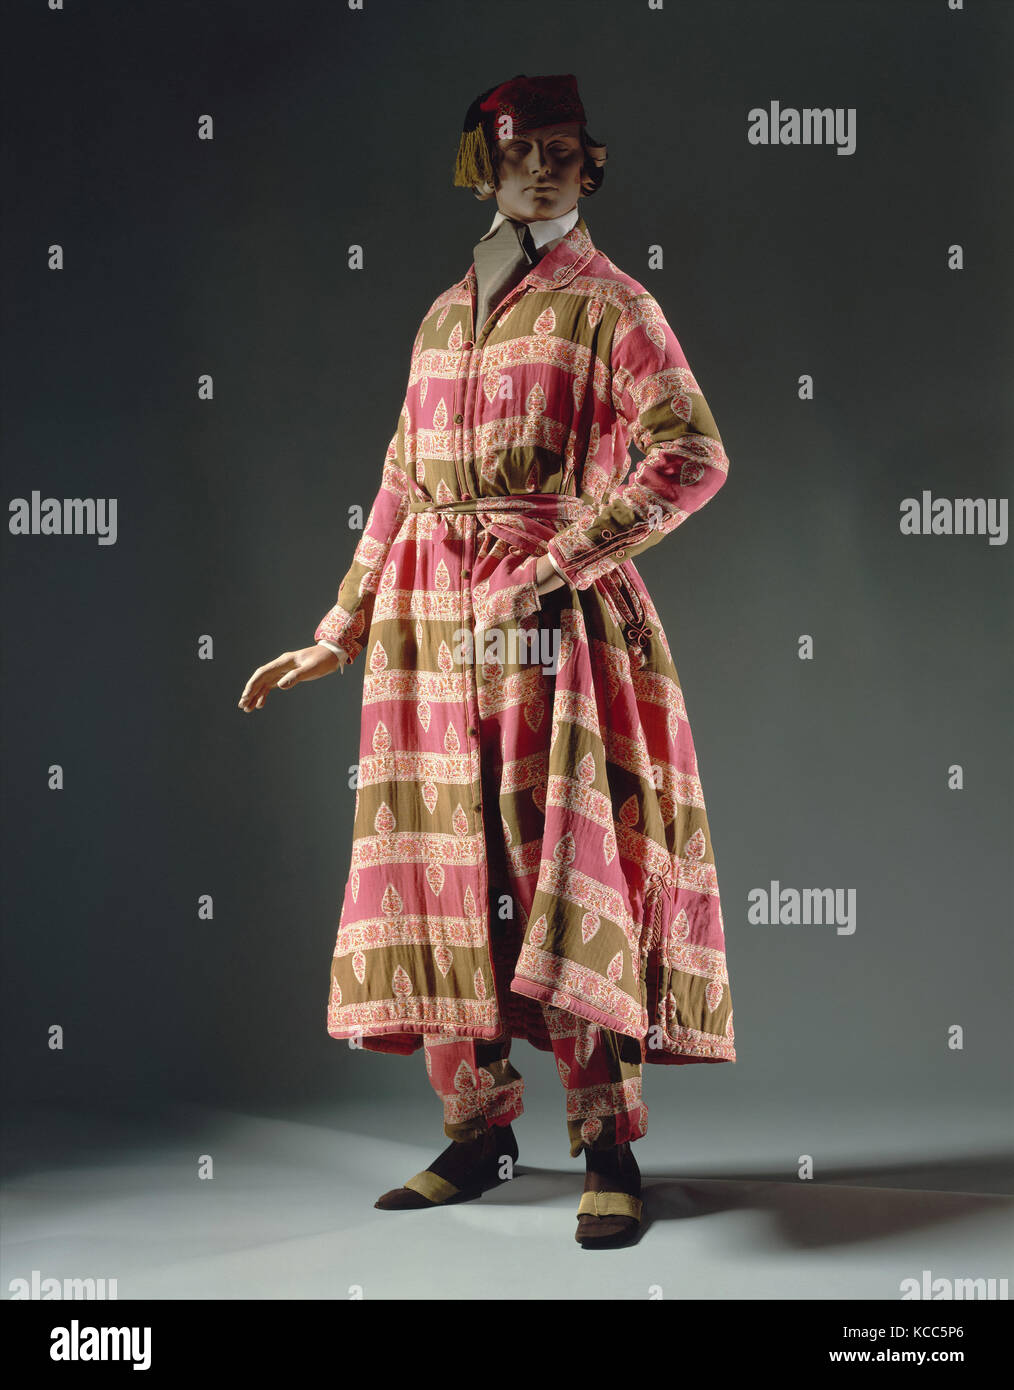 Costume Salon, fin des années 1840, American, laine, soie, coton, dans la tradition de la dix-huitième siècle dix-neuvième siècle, banyan Banque D'Images